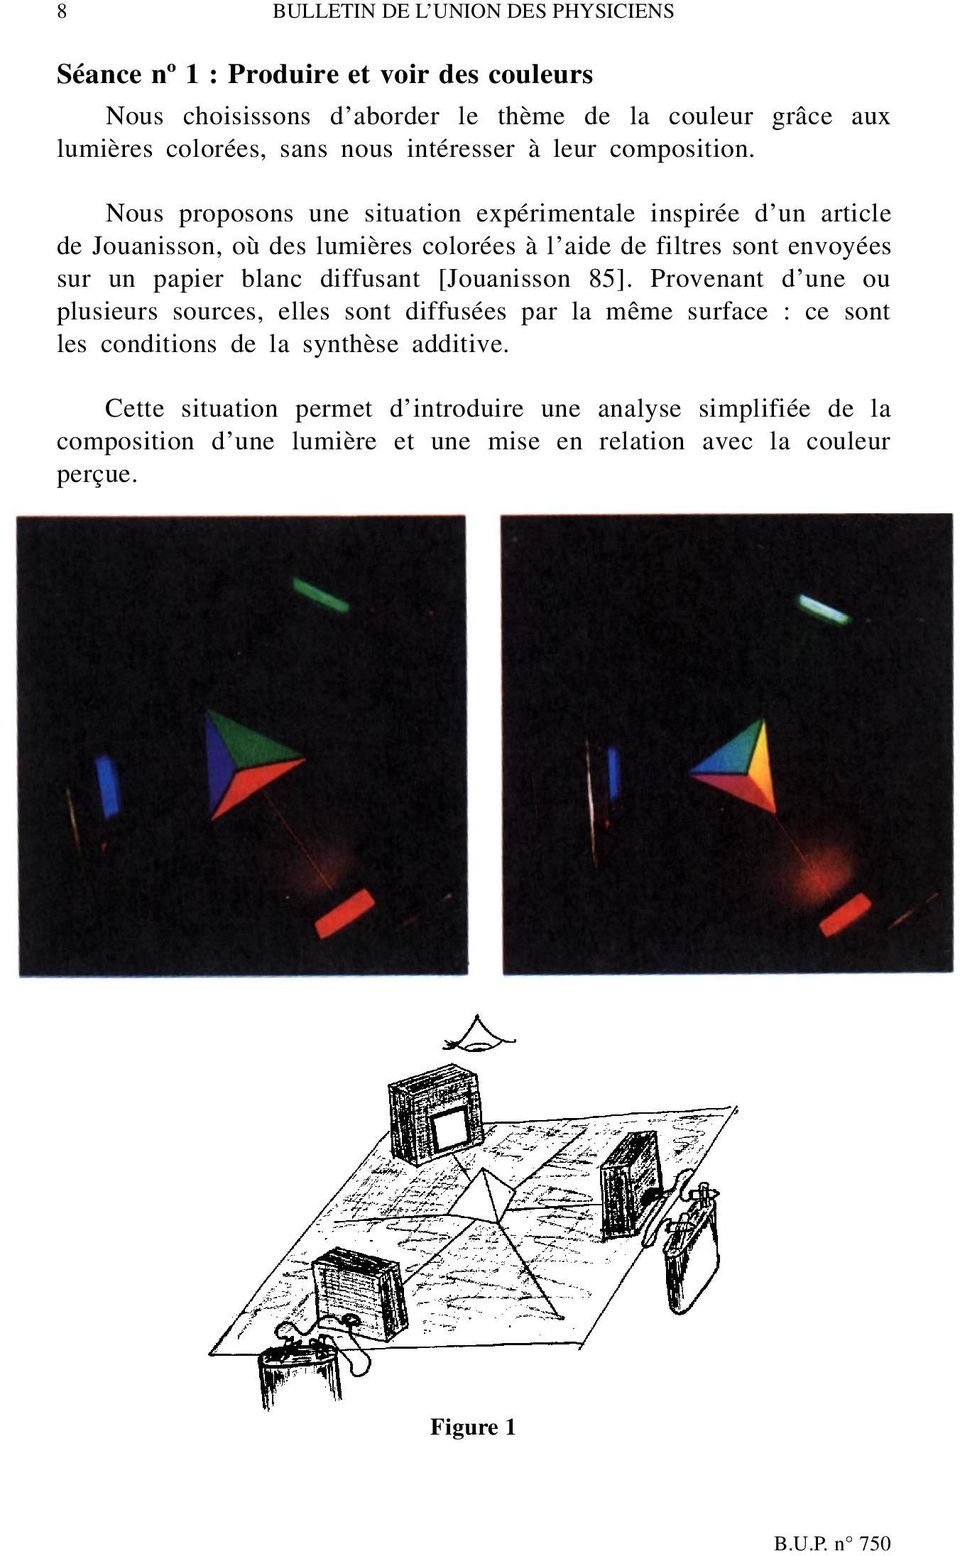 Nous proposons une situation expérimentale inspirée d un article de Jouanisson, où des lumières colorées à l aide de filtres sont envoyées sur un papier blanc diffusant